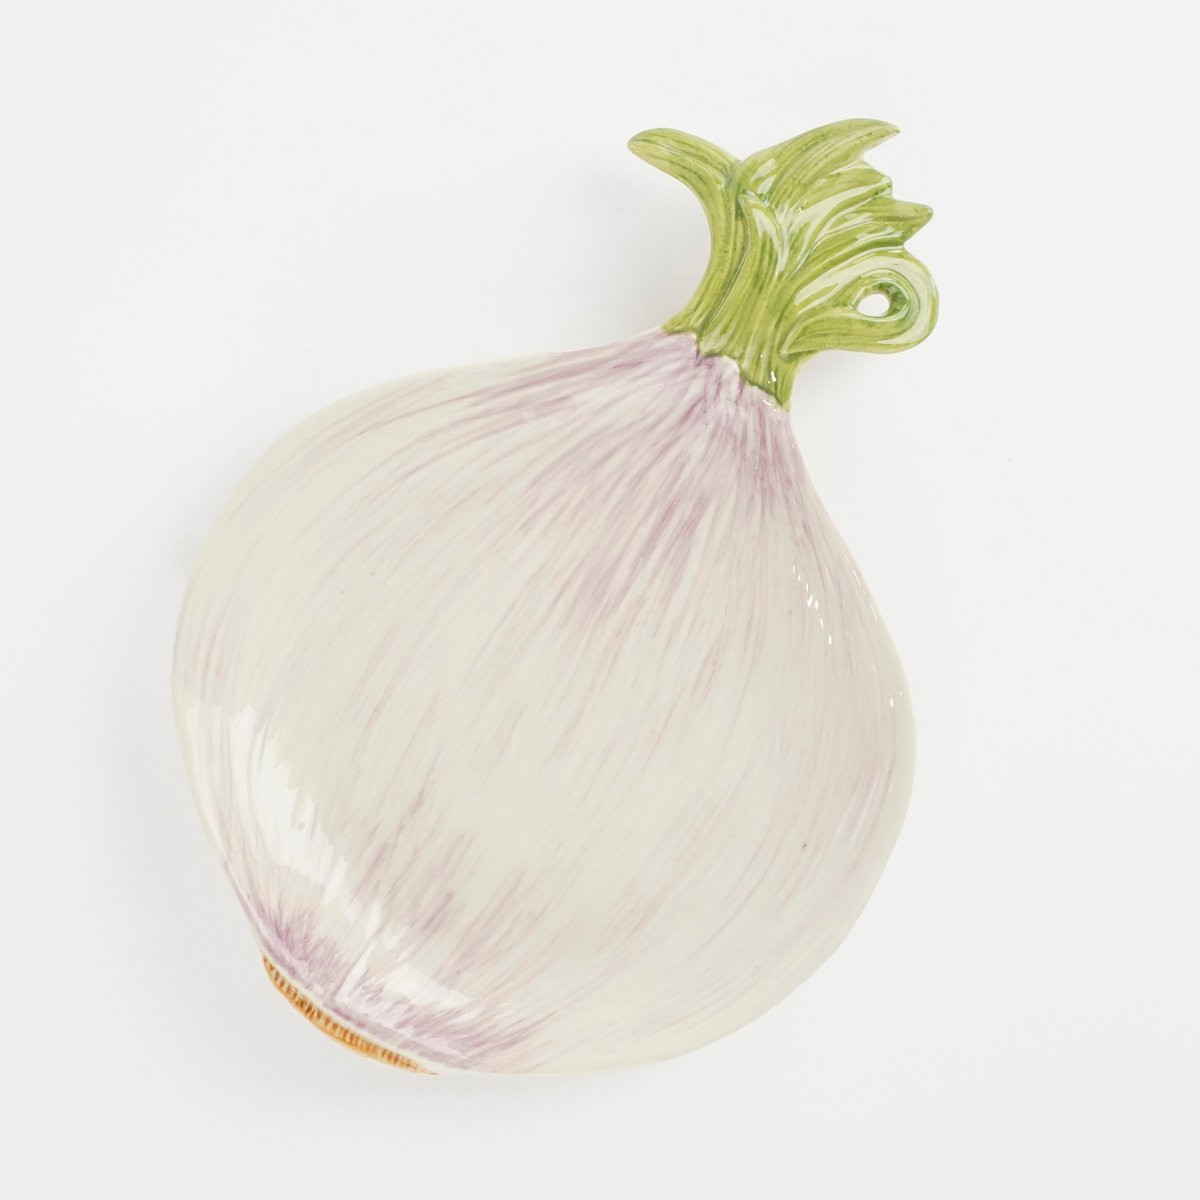 Mica Plate Onion L26 x W18 x H3 cm Ceramic Off White-8720362237693-31